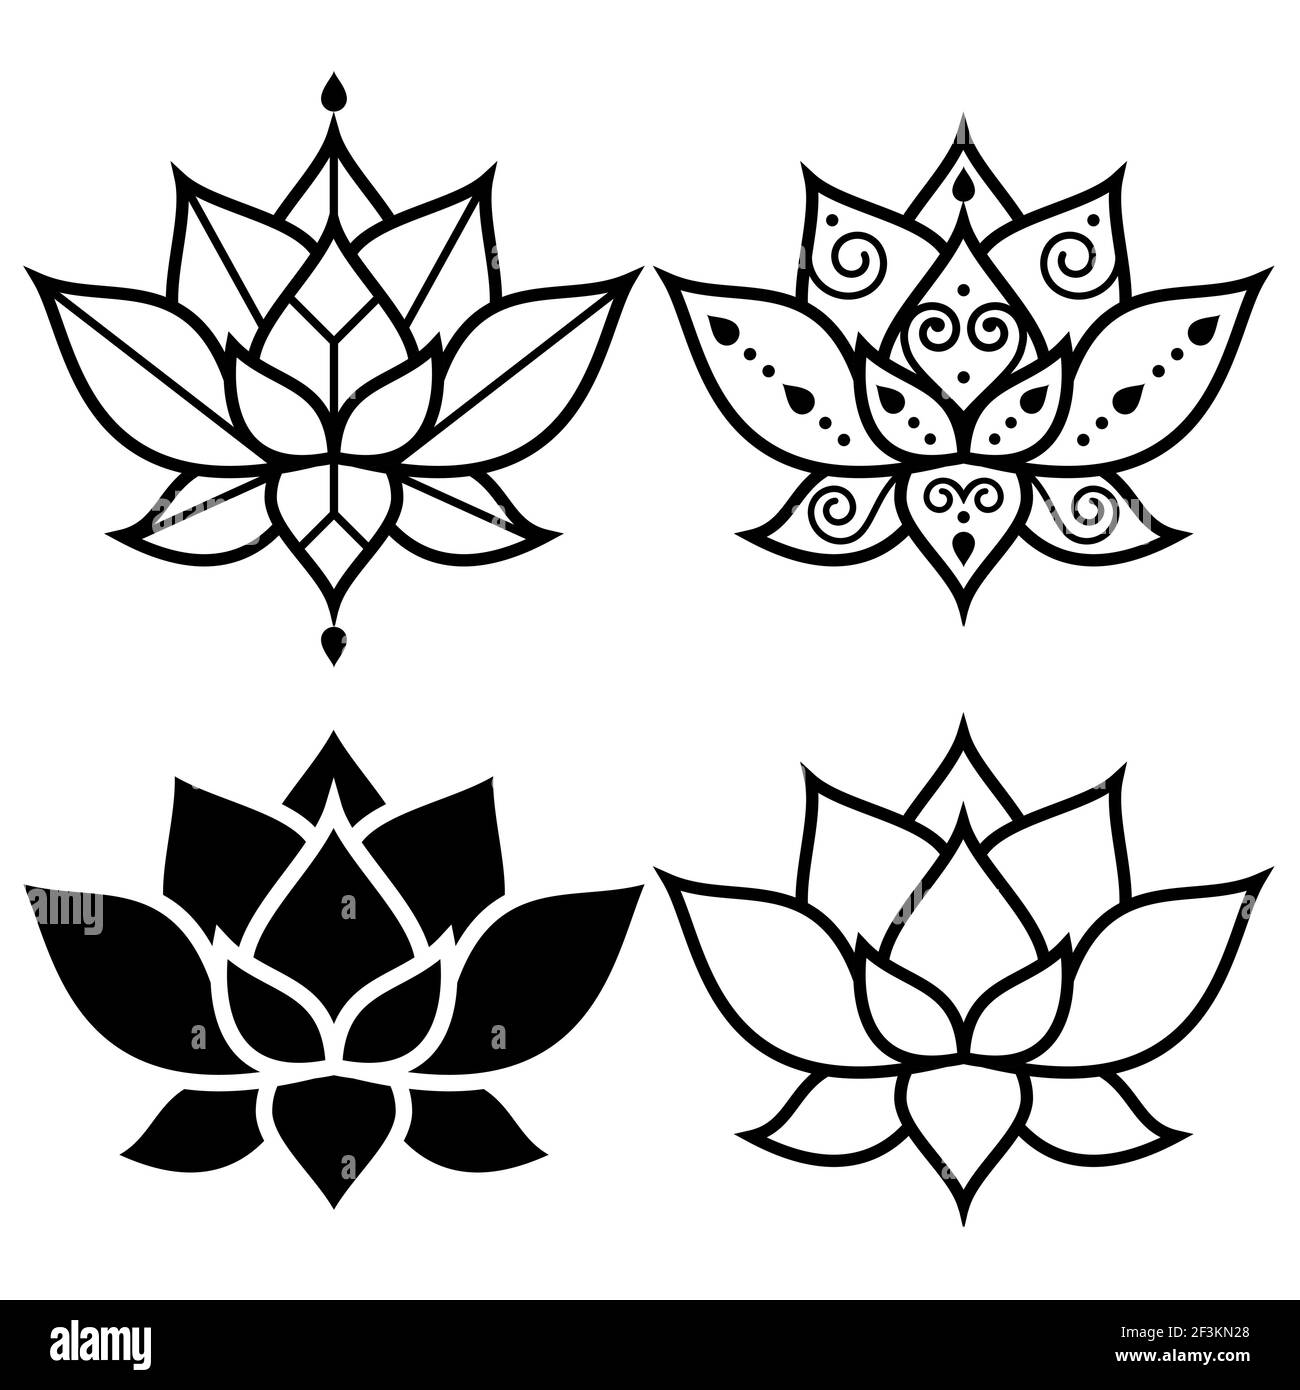 Lotus Blumen einfaches geometrisches Design Set - Yoga, Zen, buddhismus, Achtsamkeit Konzept Stock Vektor